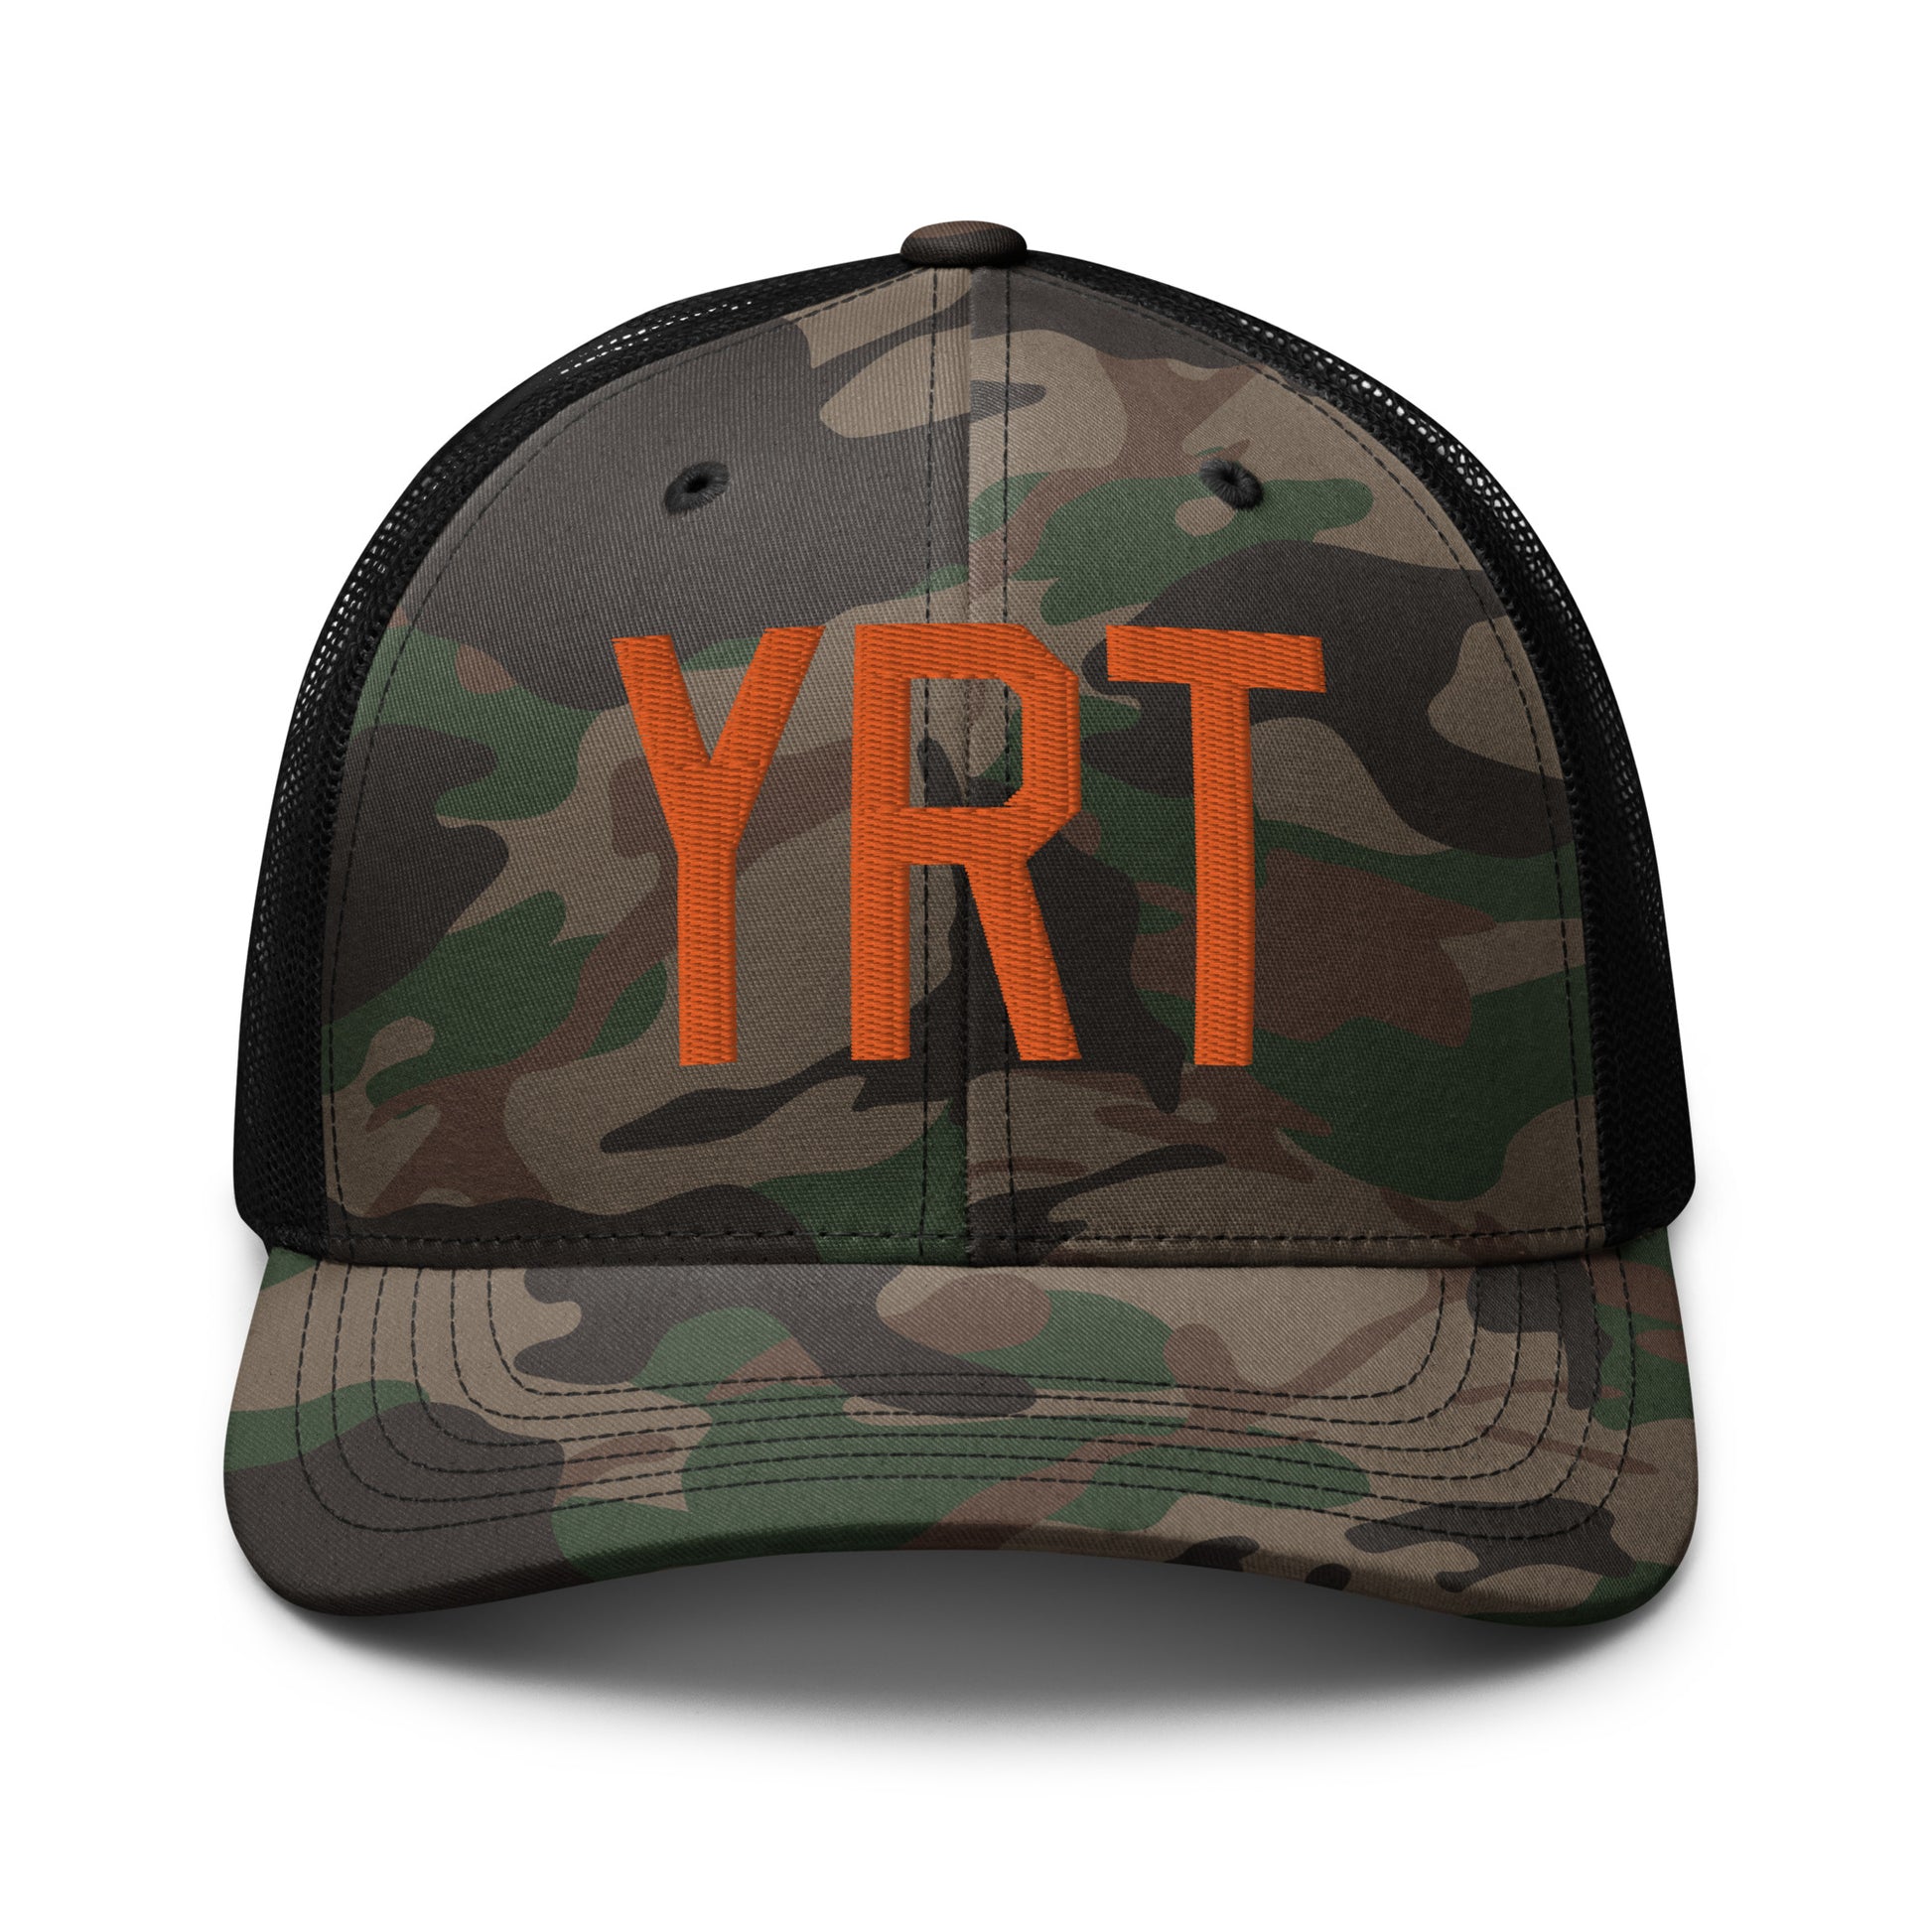 Airport Code Camouflage Trucker Hat - Orange • YRT Rankin Inlet • YHM Designs - Image 10